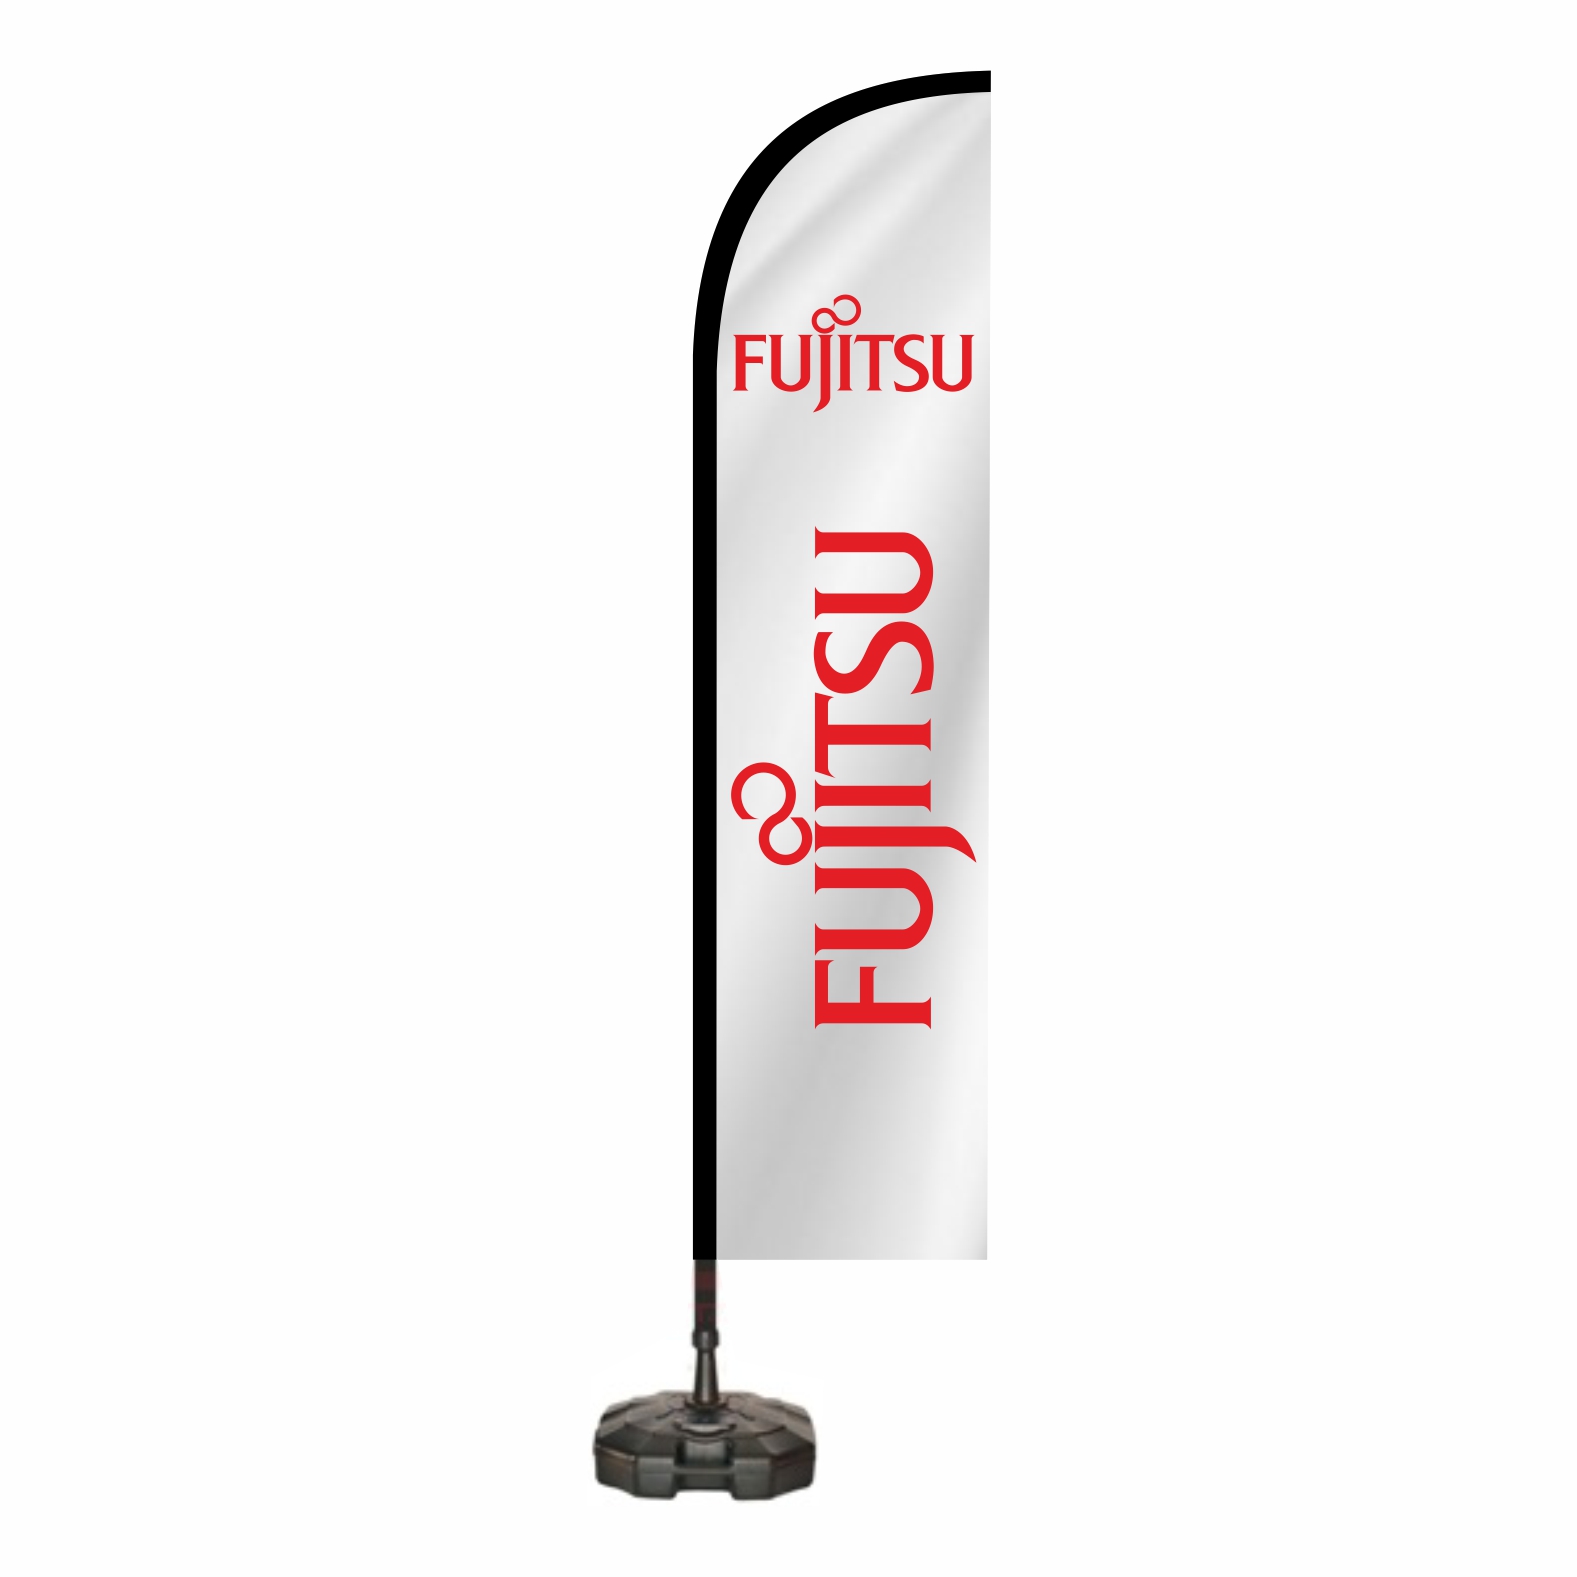 Fujitsu Plaj Bayraklar Fiyat